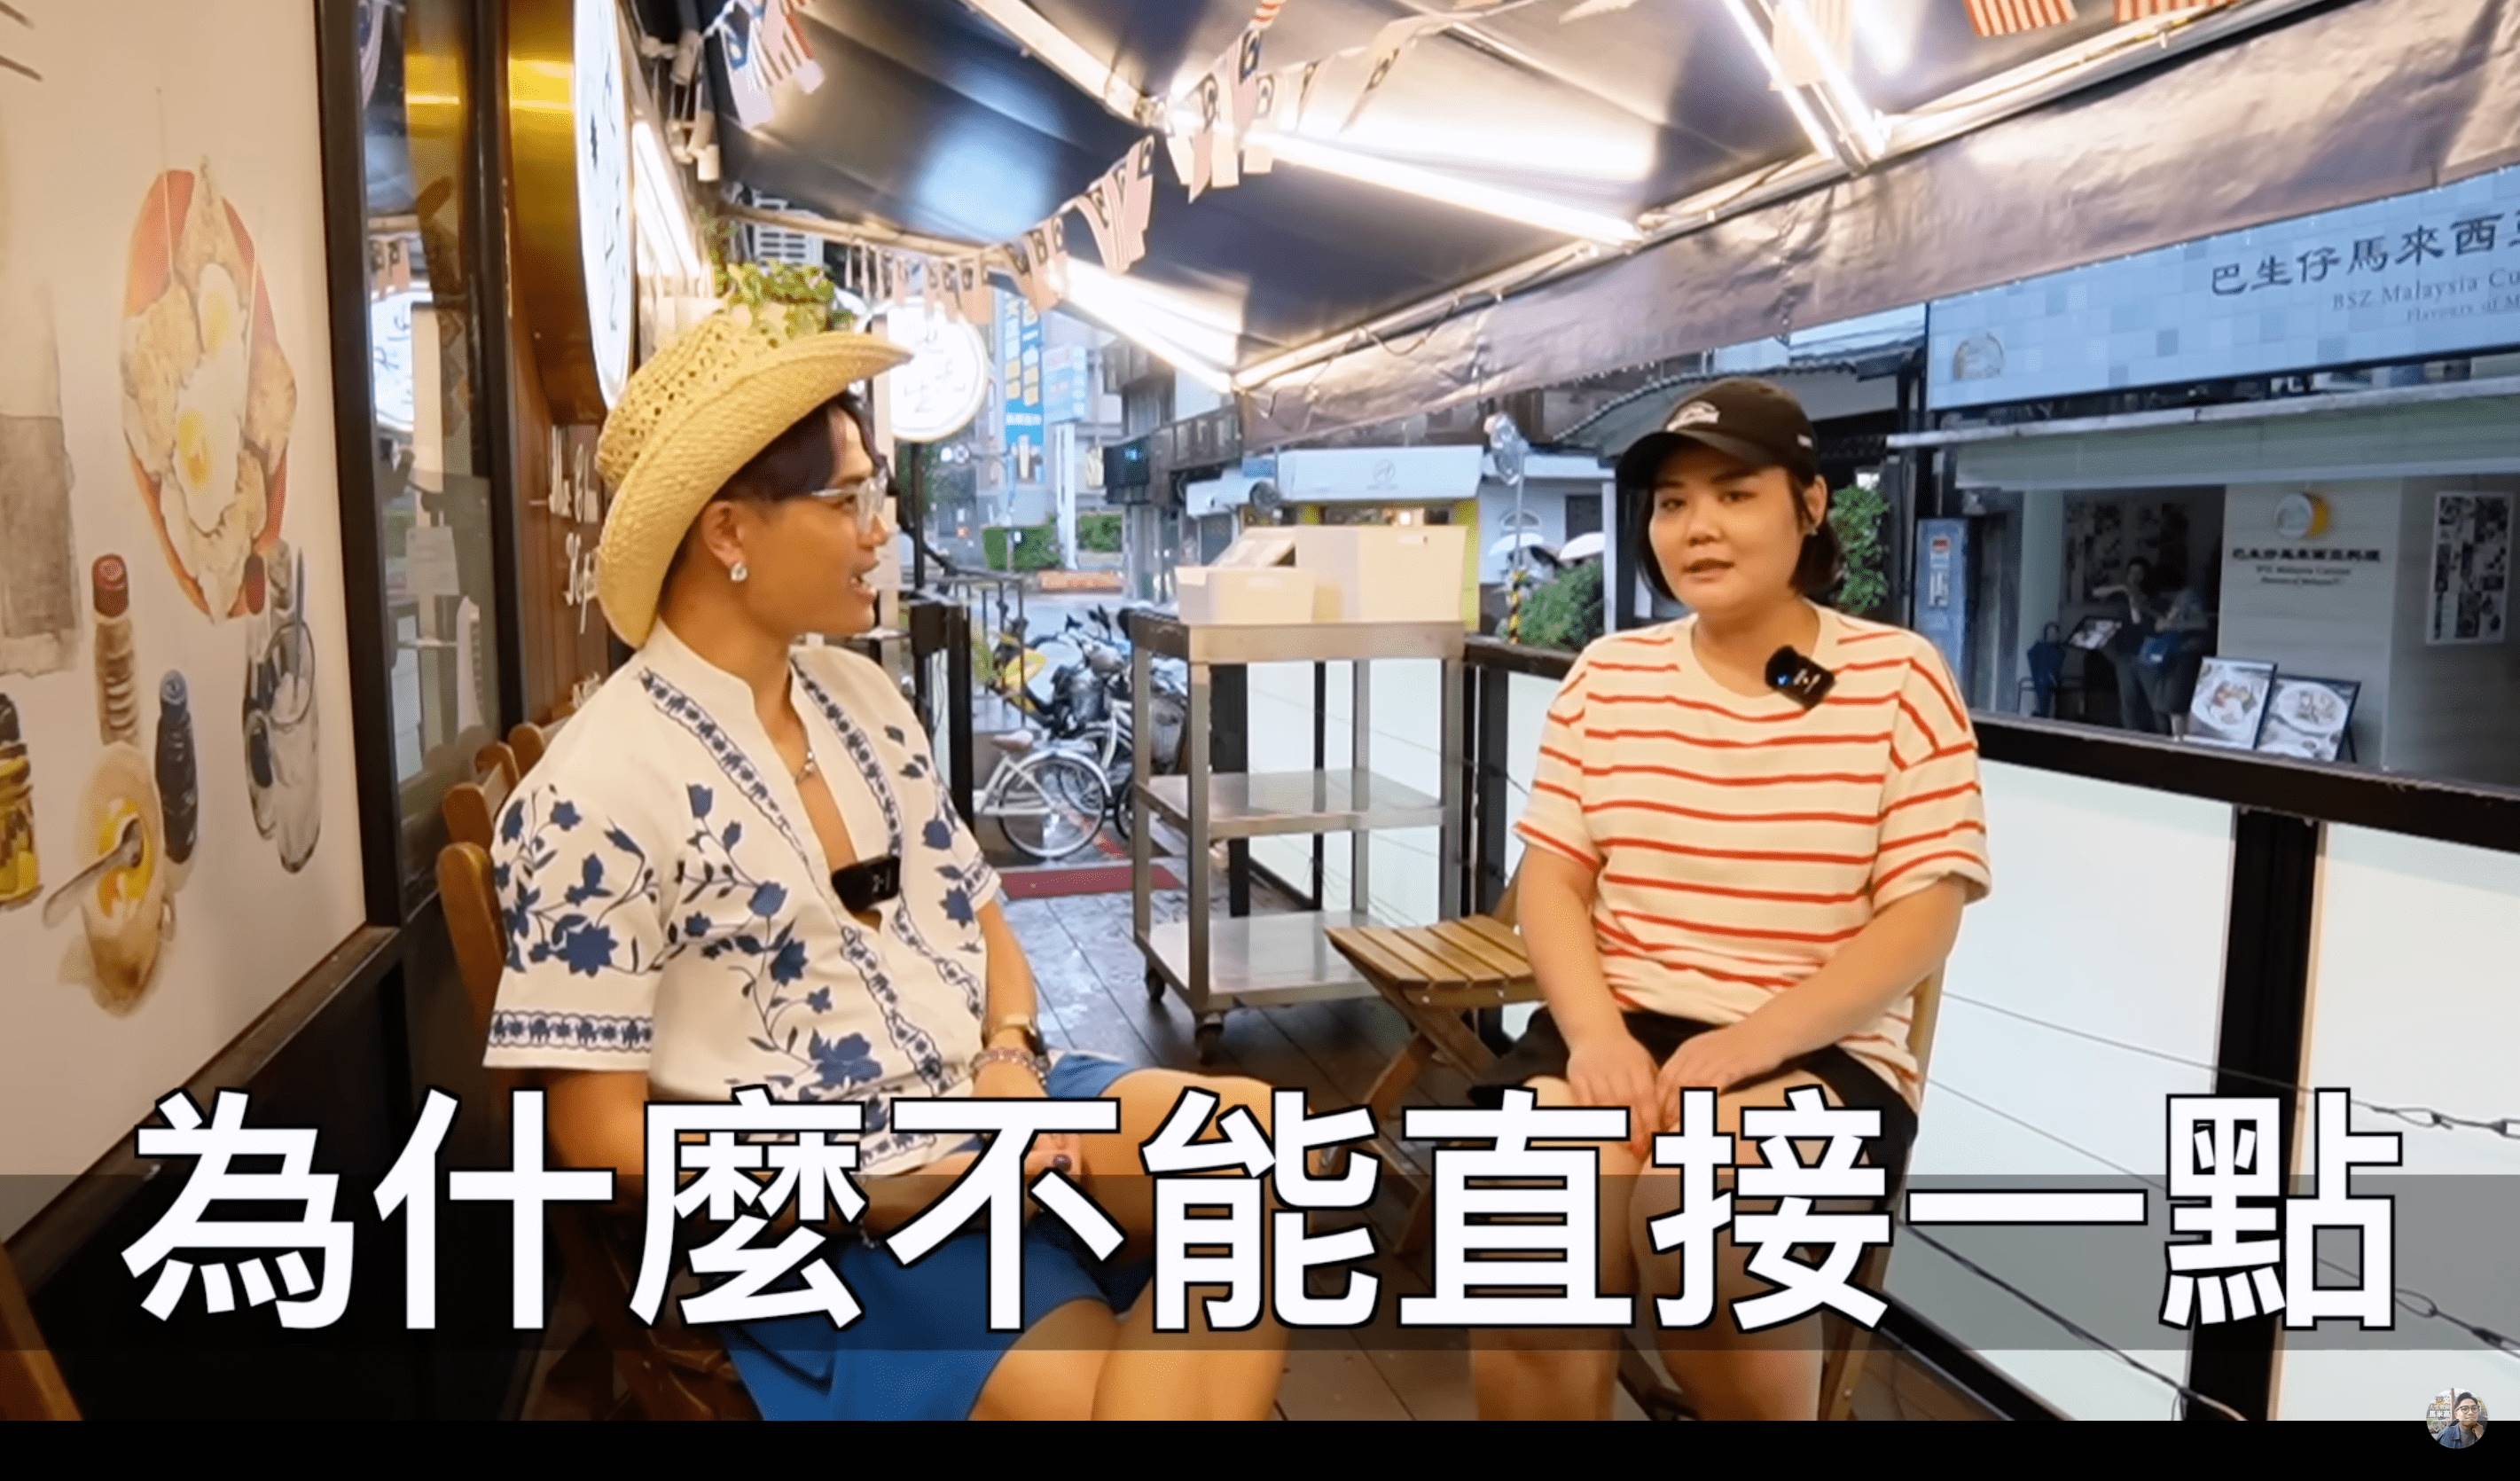 香港YouTuber馬米高近日在頻道上發布影片，影片中馬米高與移民來台的香港人Jenny談到來台灣後的文化衝突與不易處，影片中也指出他們認為台灣人的缺點，包括「講話很假」、「死不認錯」等，並表示「來台灣定居要三思」。